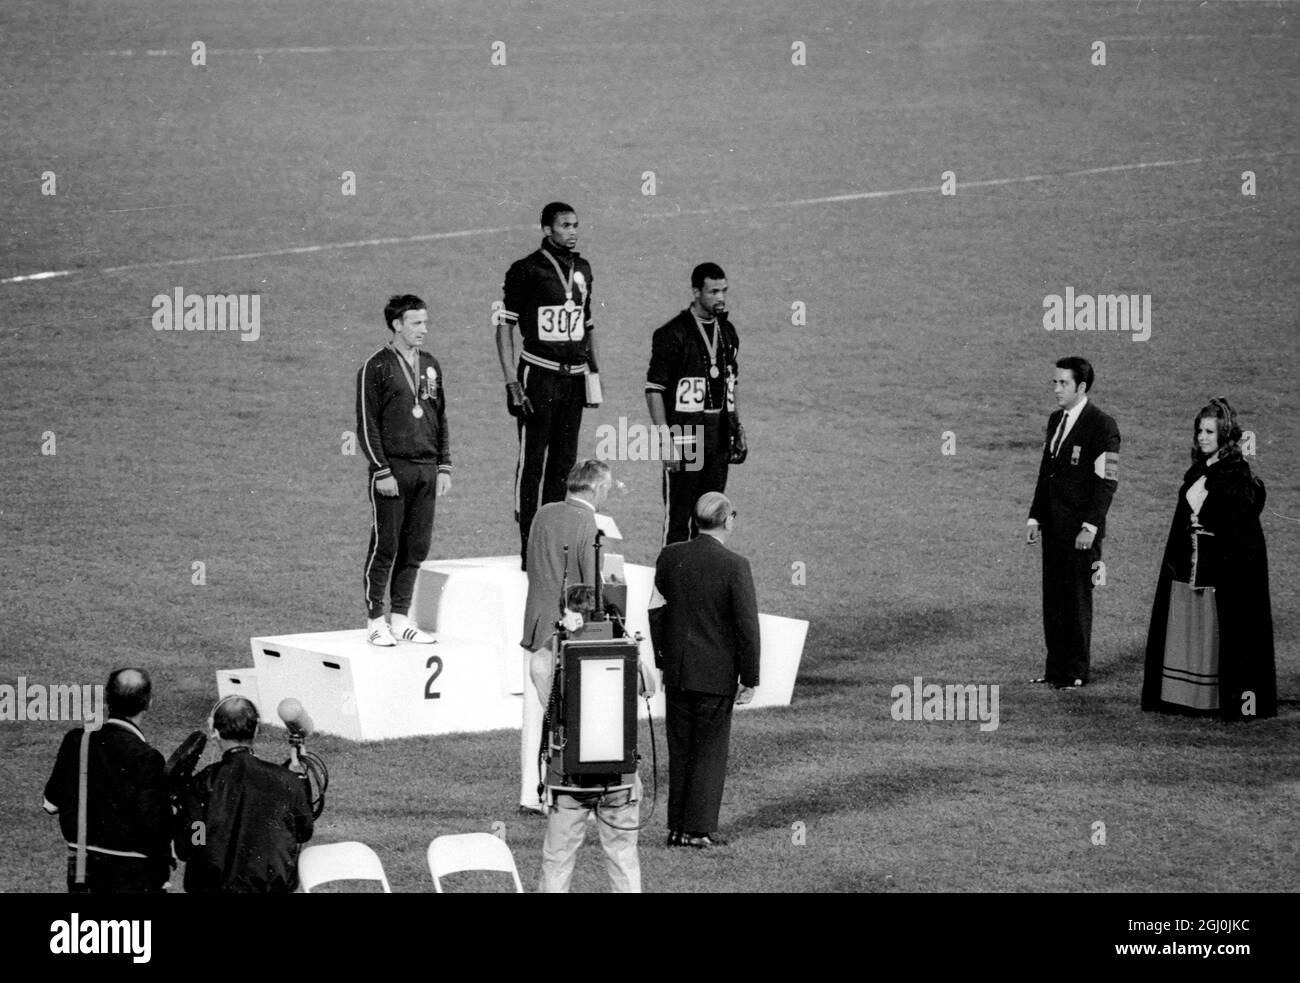 Die Olympischen Spiele 1968, die Gold- und Bronzemedaillengewinnerinnen von Mexiko-Stadt, Tommie Smith (Mitte) und John Carlos (rechts), heben ihre Arme als „schwarze Macht“-Geste während der Zeremonie der Olympischen Spiele. Smith hatte beim 200-Meter-Rennen einen Weltrekord von 19.8 Sekunden aufgestellt. Jeder Mann trug einen schwarzen Handschuh an einer Hand und hob ihn, wobei die Faust geballt wurde, als die US-Flagge angehoben wurde. Perter Norman aus Australien (links) gewann die Silbermedaille. Oktober 1968. Stockfoto